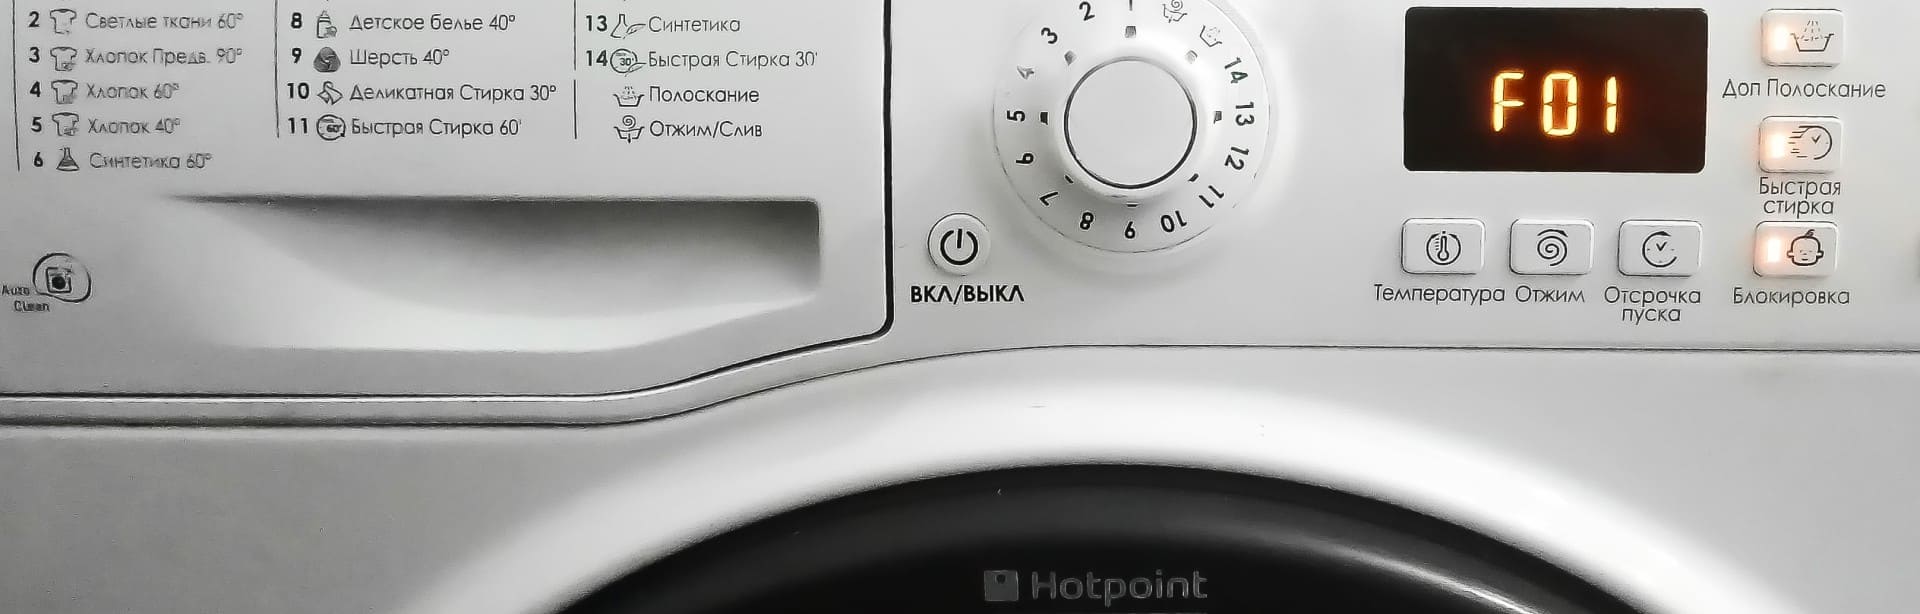 Ремонт стиральных машин Hotpoint-Ariston в Иркутске по низкой цене от РСМ-Сервис